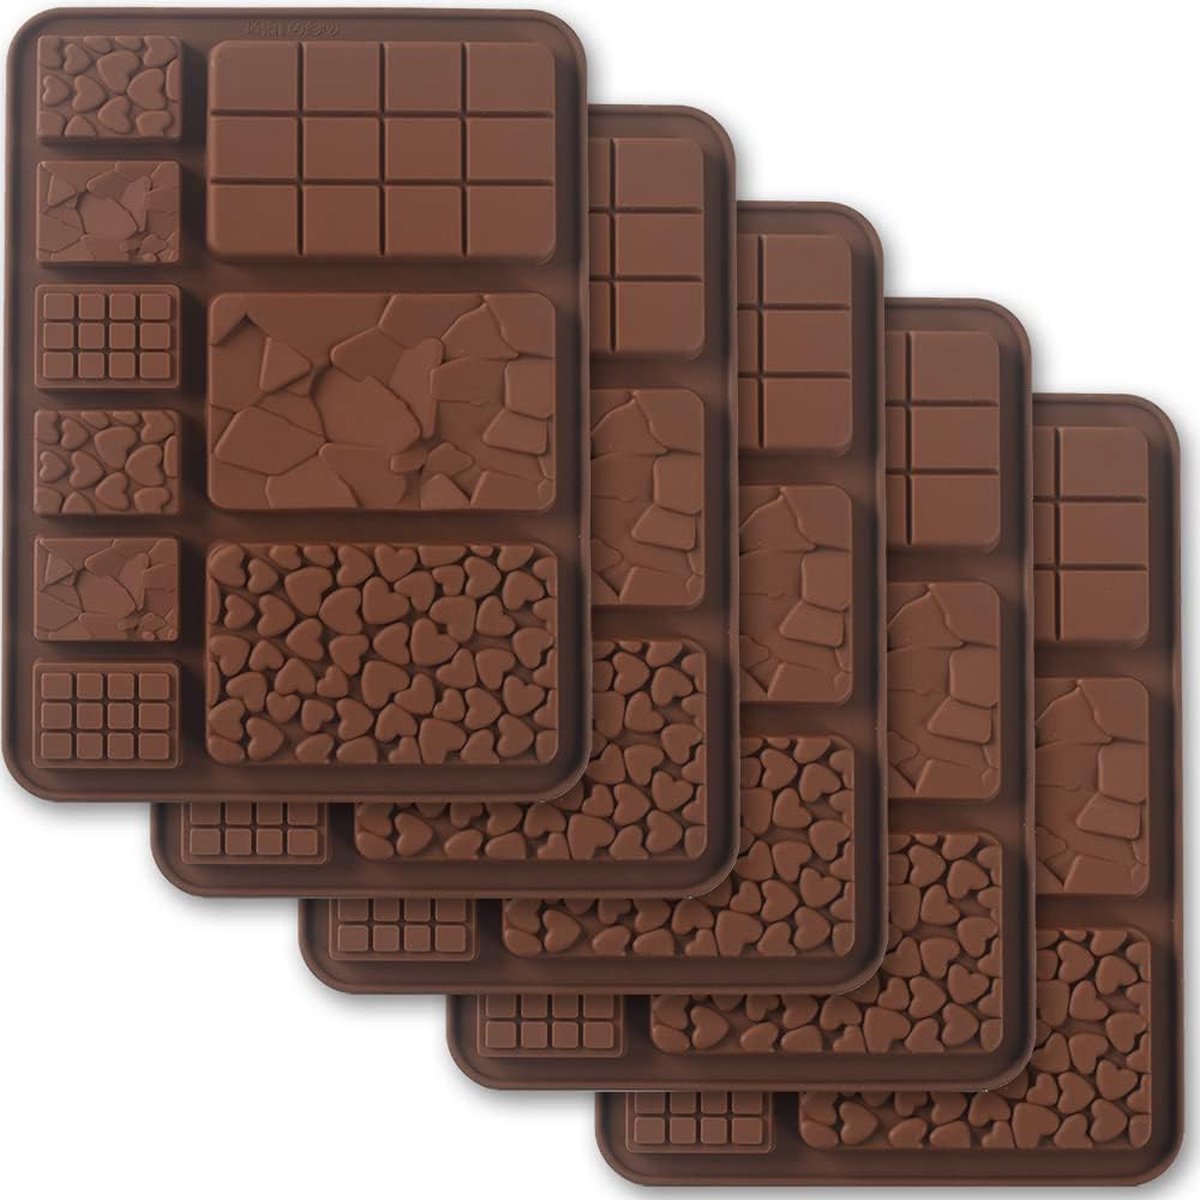 Break Apart siliconen chocoladevormen, chocoladerepenvormen, zelfgemaakte eiwit- en energiereepvormen, 5 verpakkingen, bruin